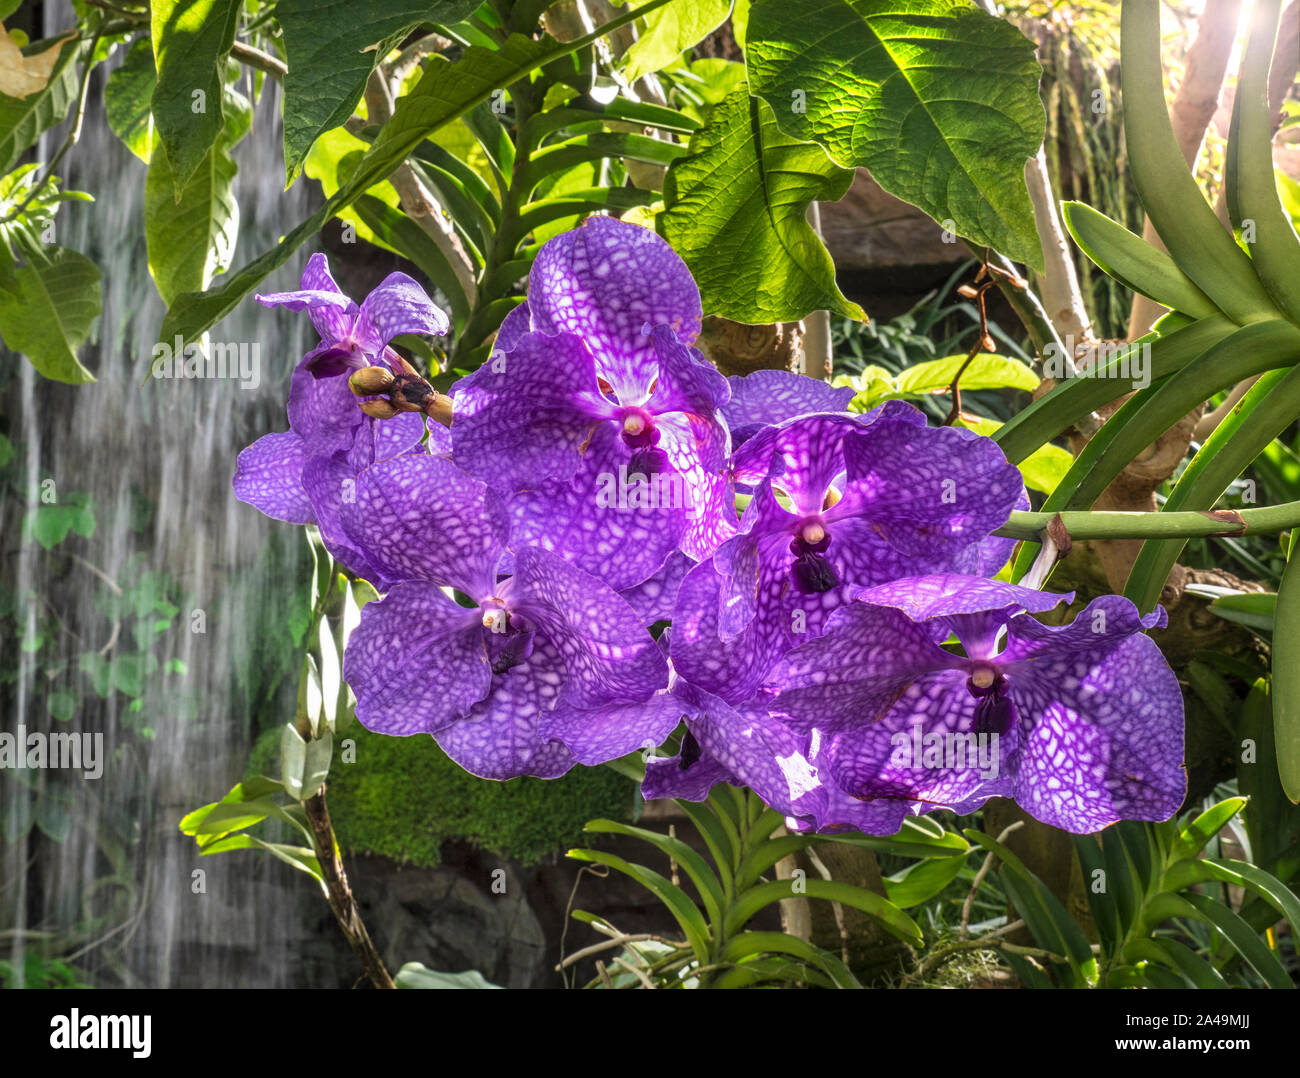 Blau MOTH ORCHIDS Wasserfall, tropischen Umgebung Phalaenopsis (Orchideen)  Orchidee Phalaenopsis Blume Blüte, die gemeinhin als Motten Orchideen  bekannt Stockfotografie - Alamy